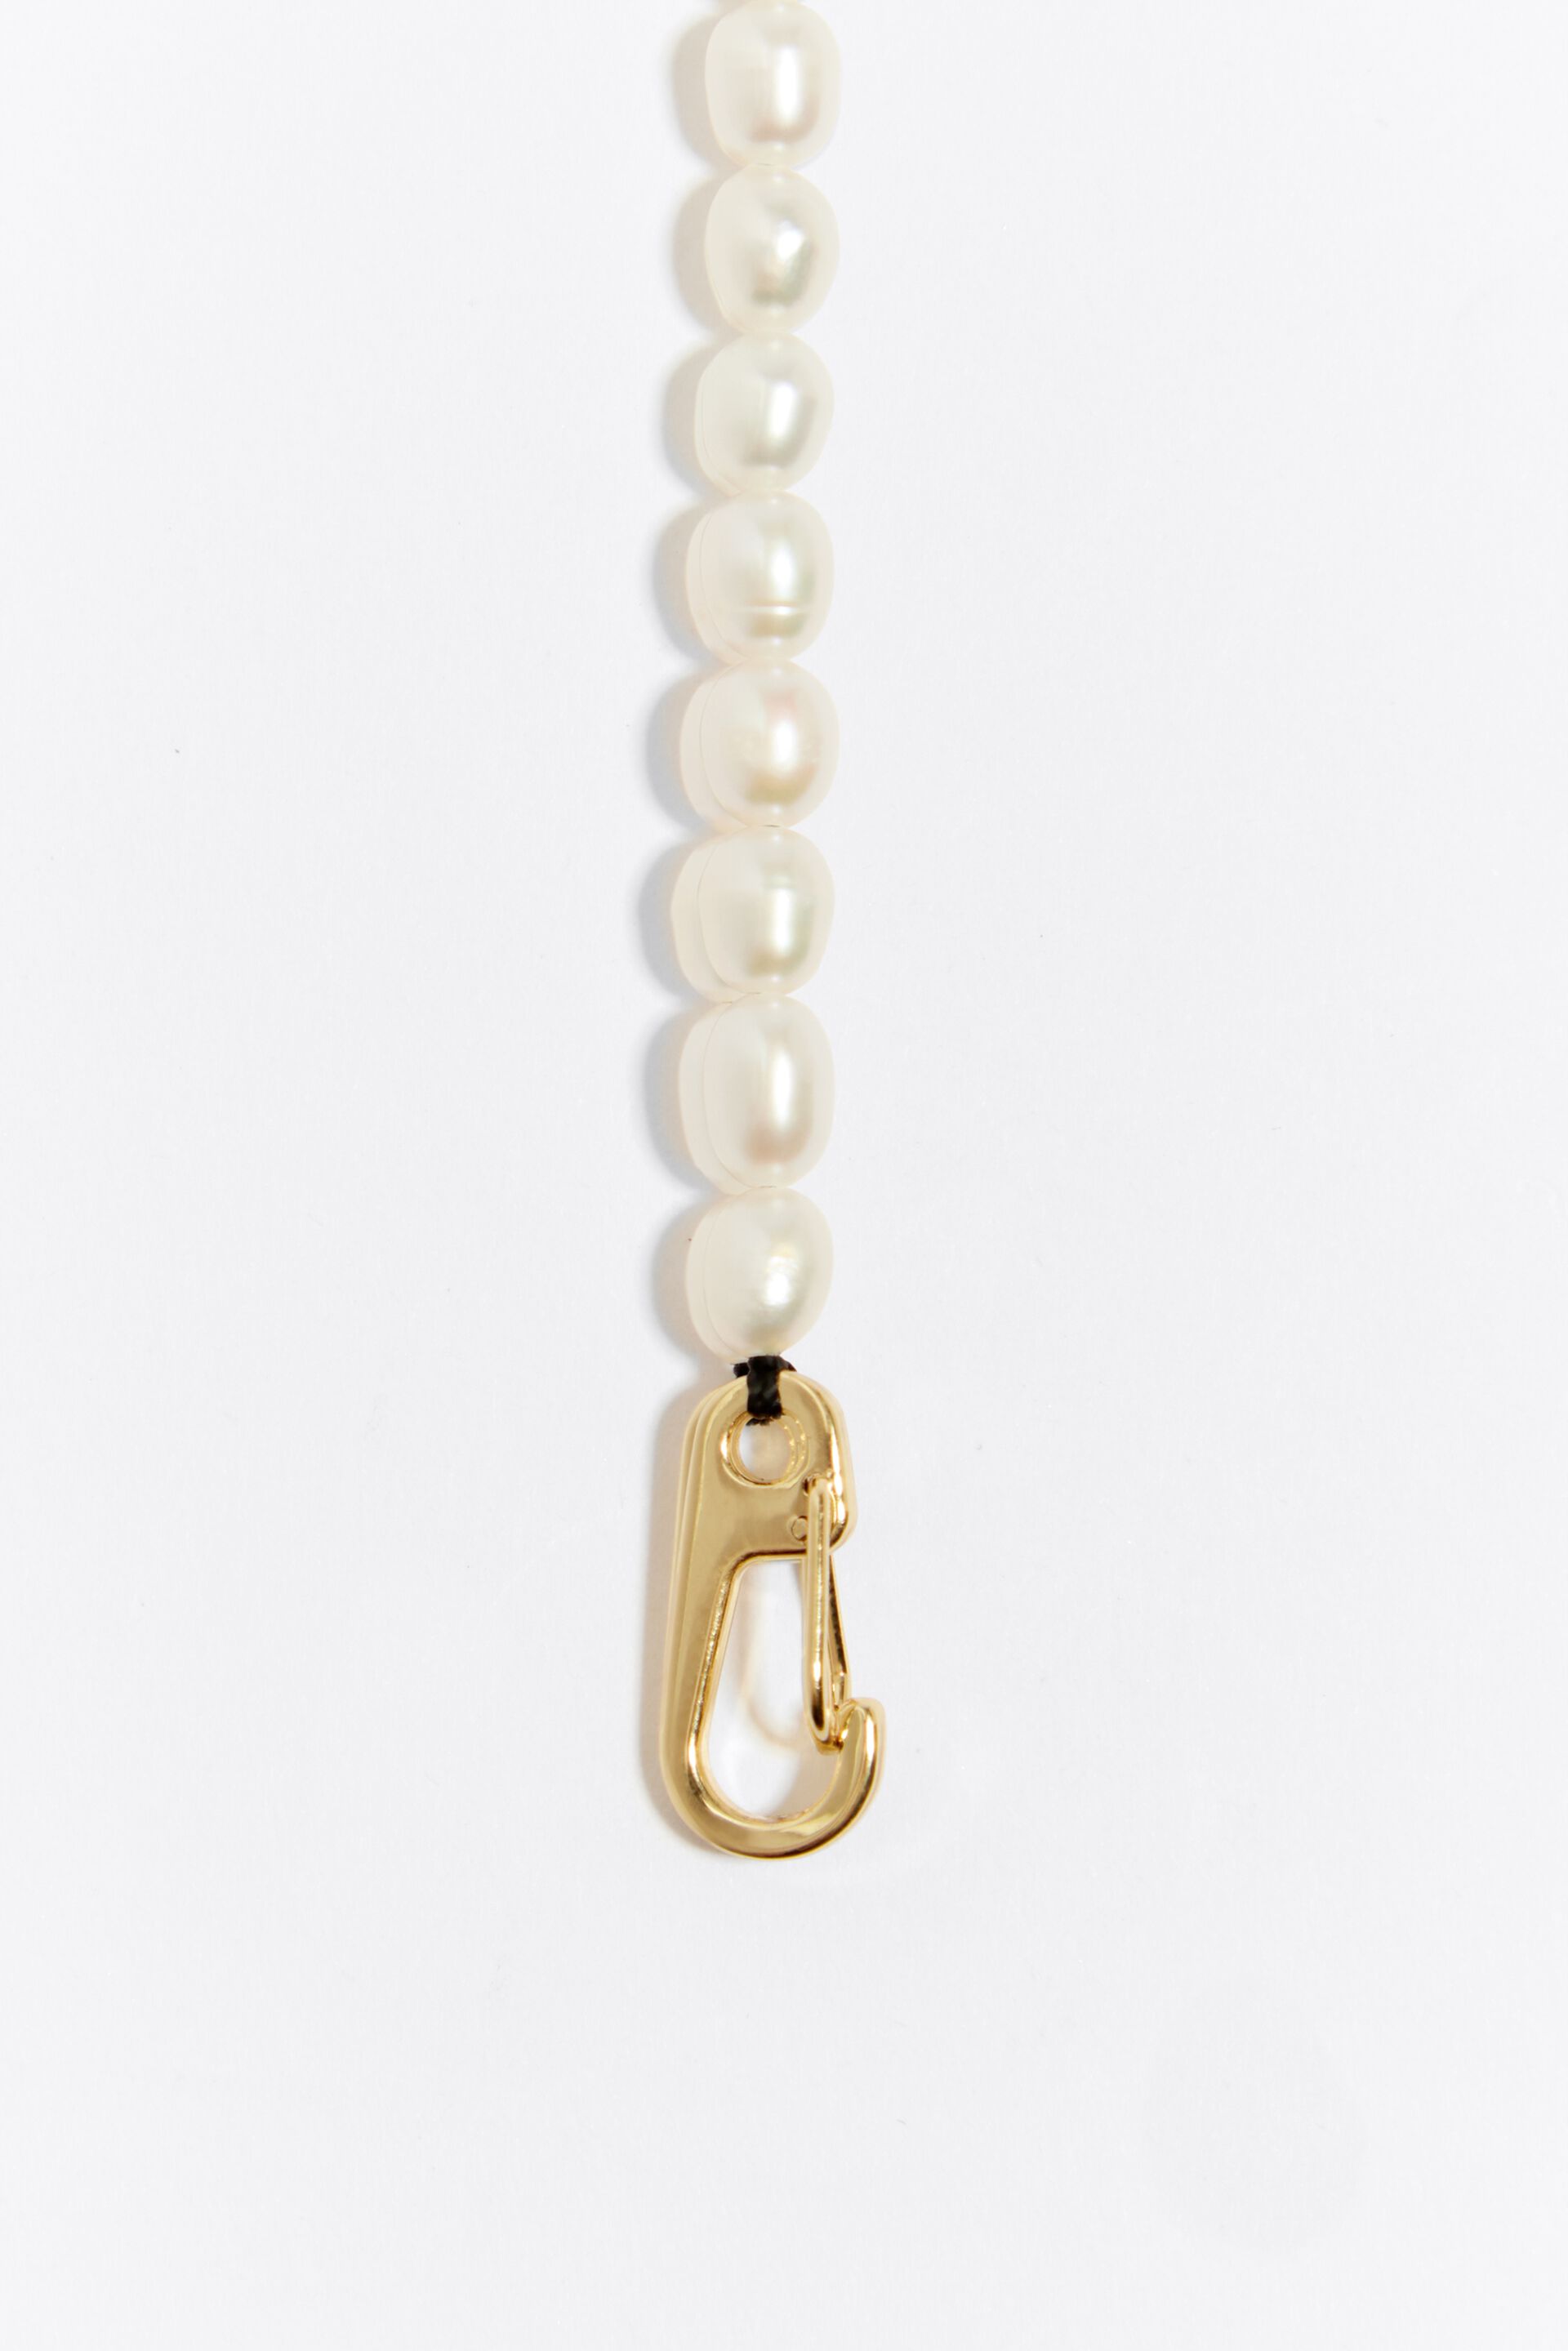 Collar Dorado de Perlas y Chaquiras Multicolor CL-13773 - Accesorios la  Bamba